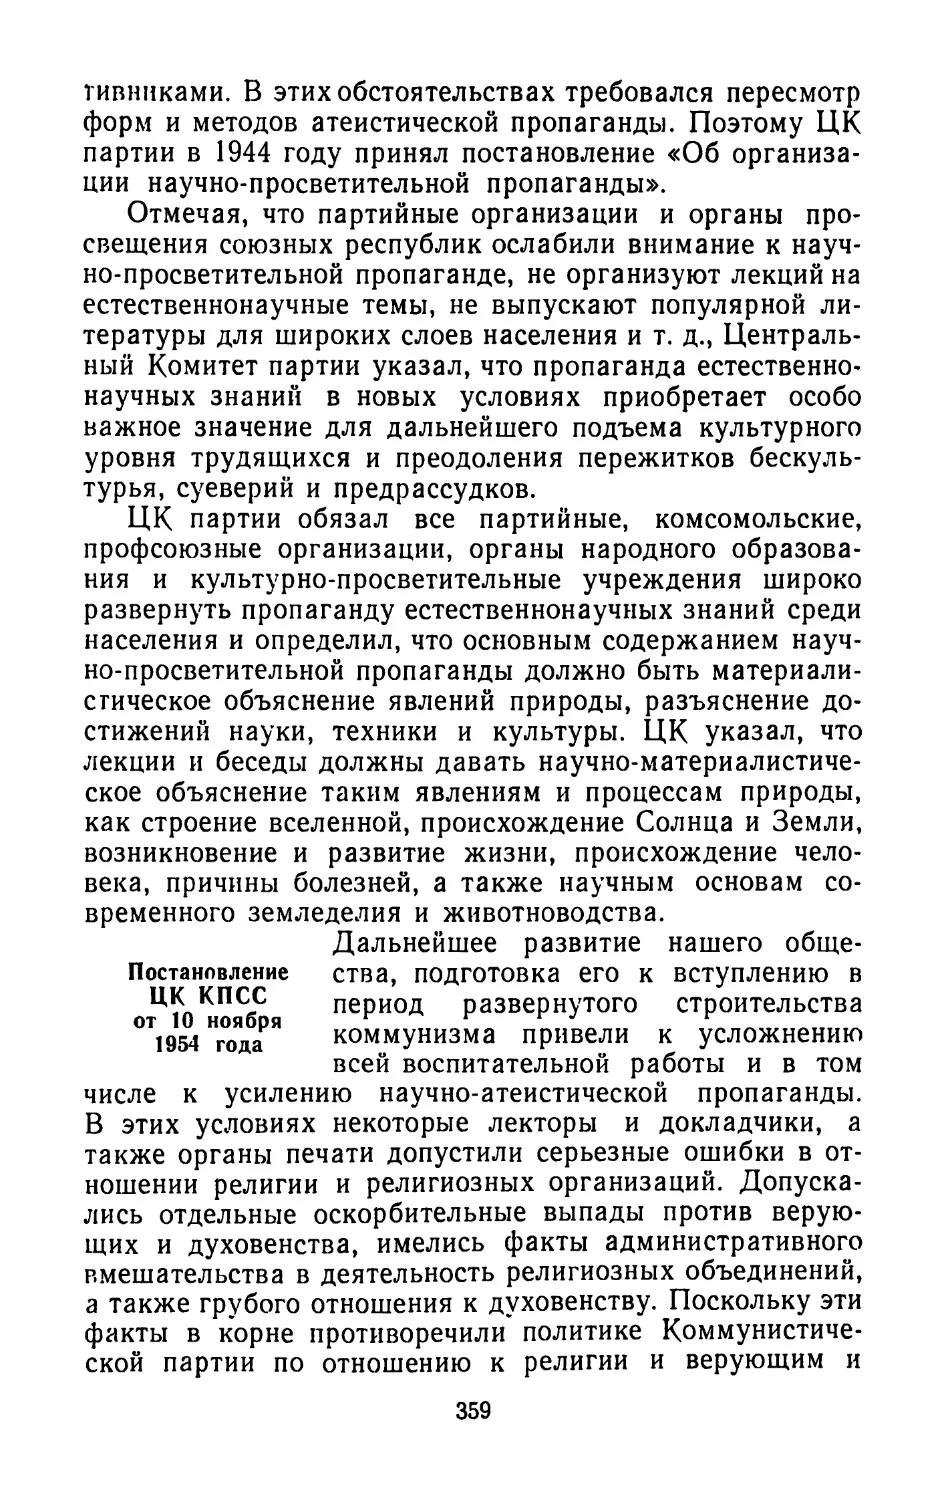 Постановление ЦК КПСС от 10 ноября 1954 года